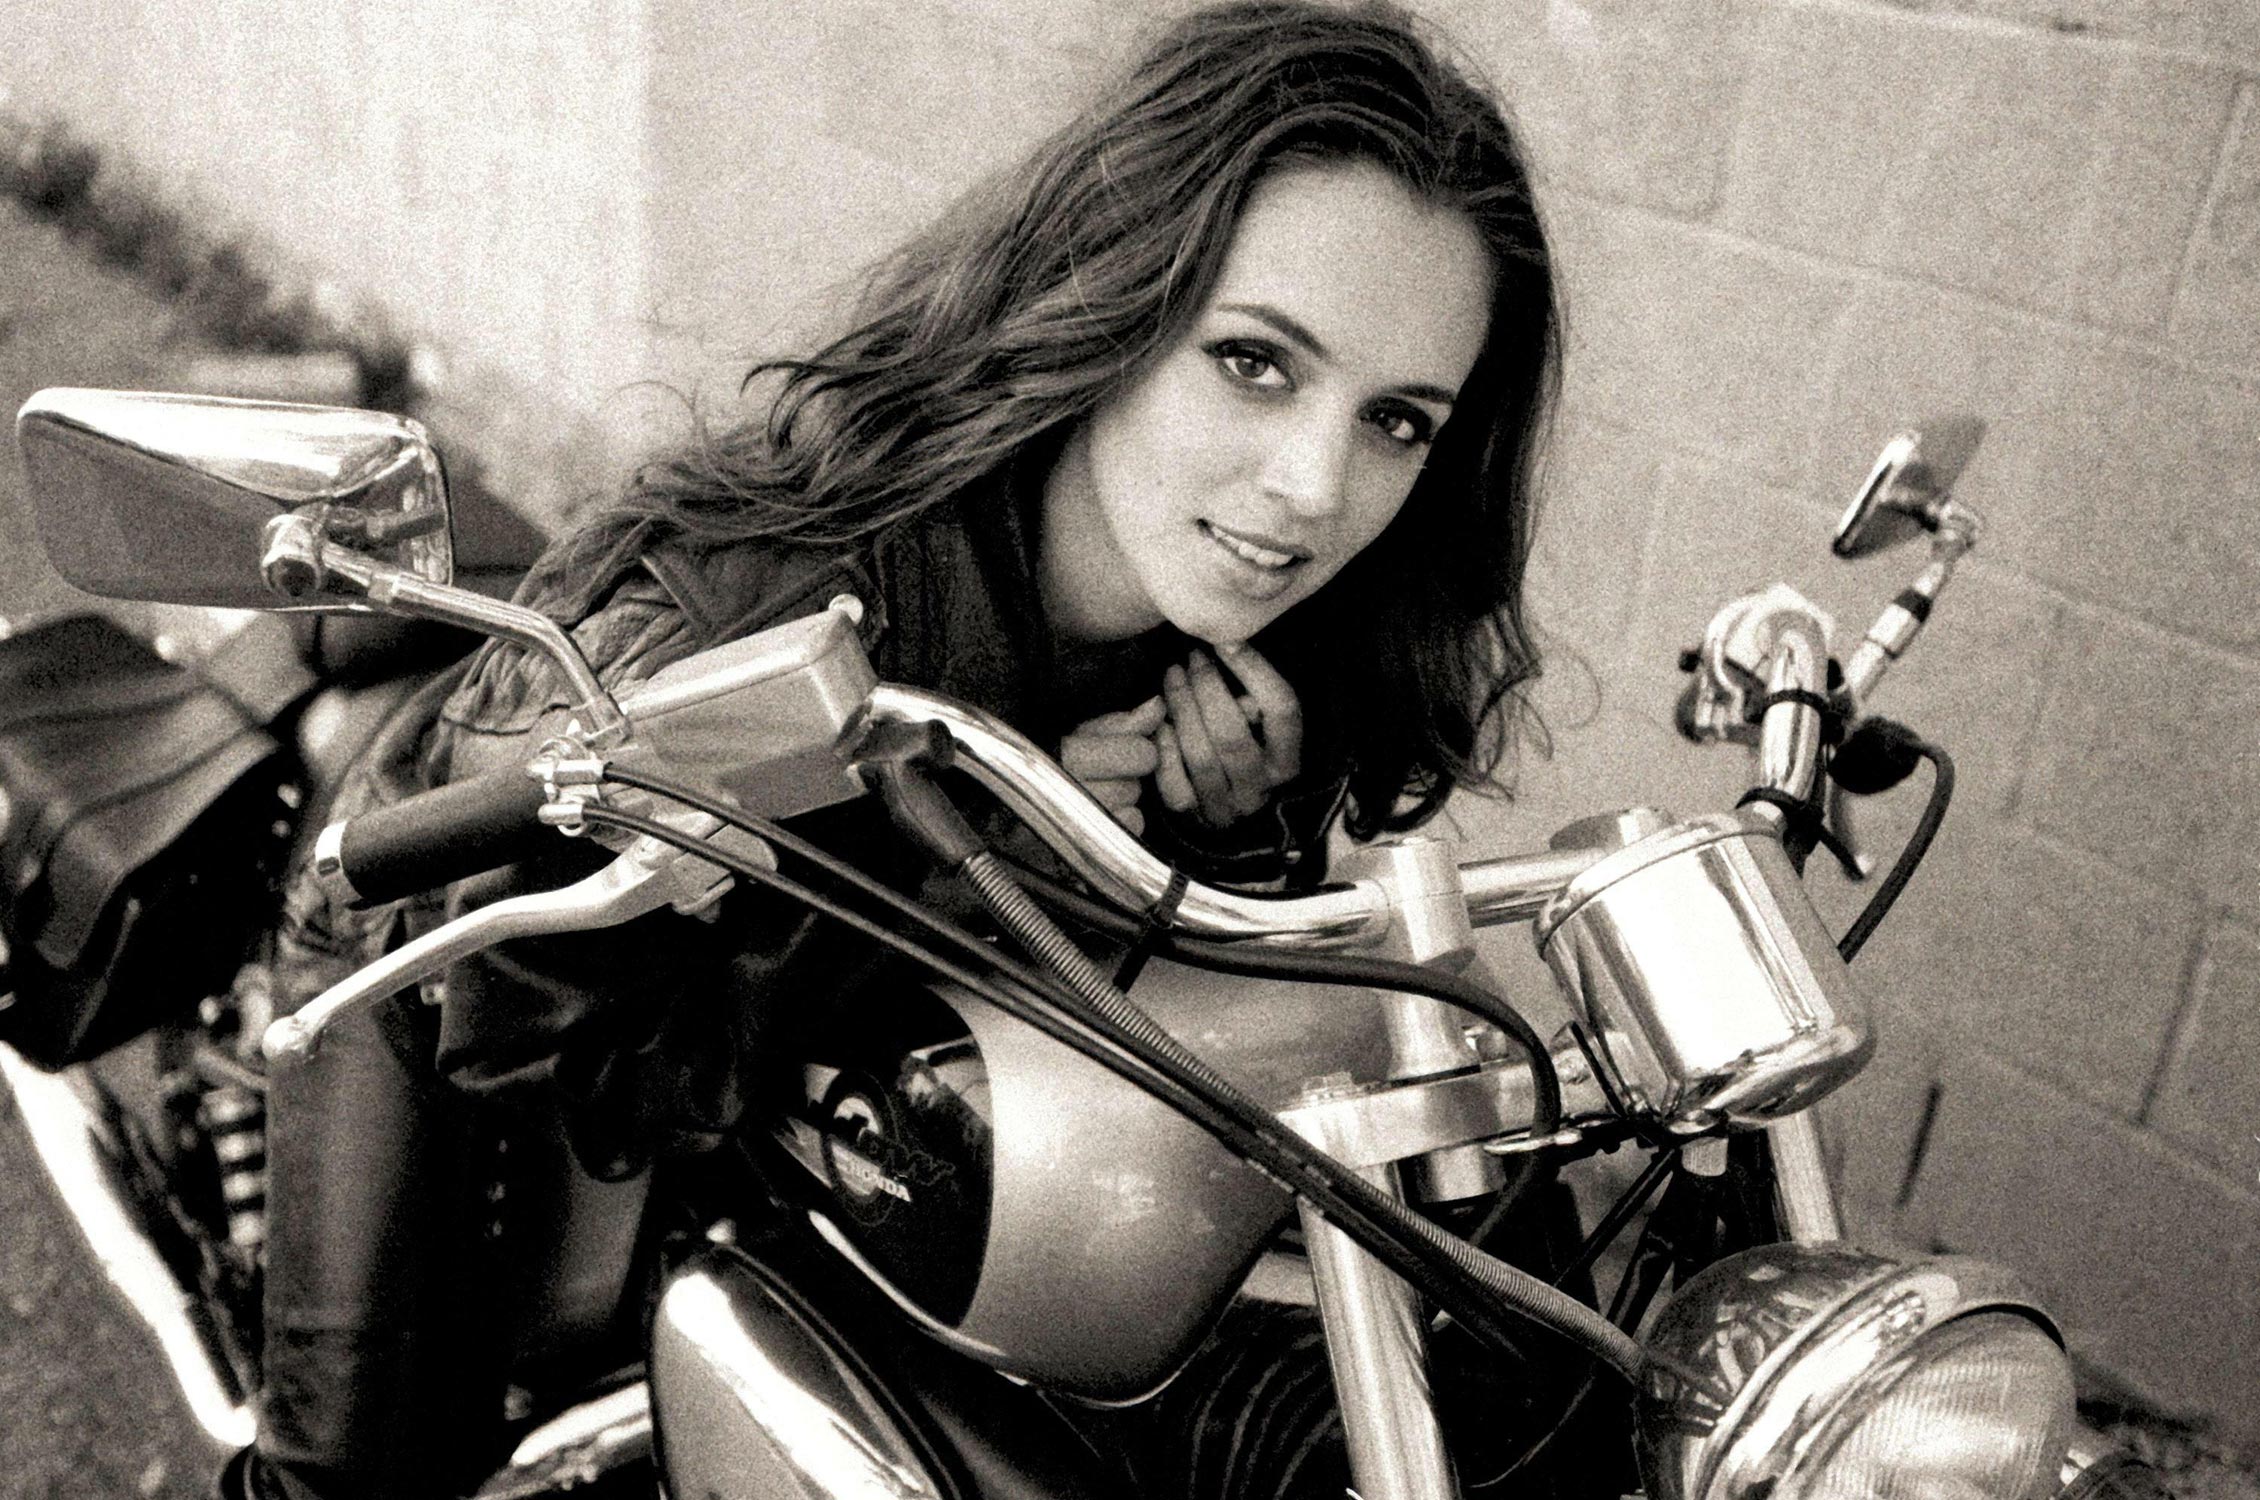 eliza-dushku-the-motorcycle-photoshoot-02-1500.jpg